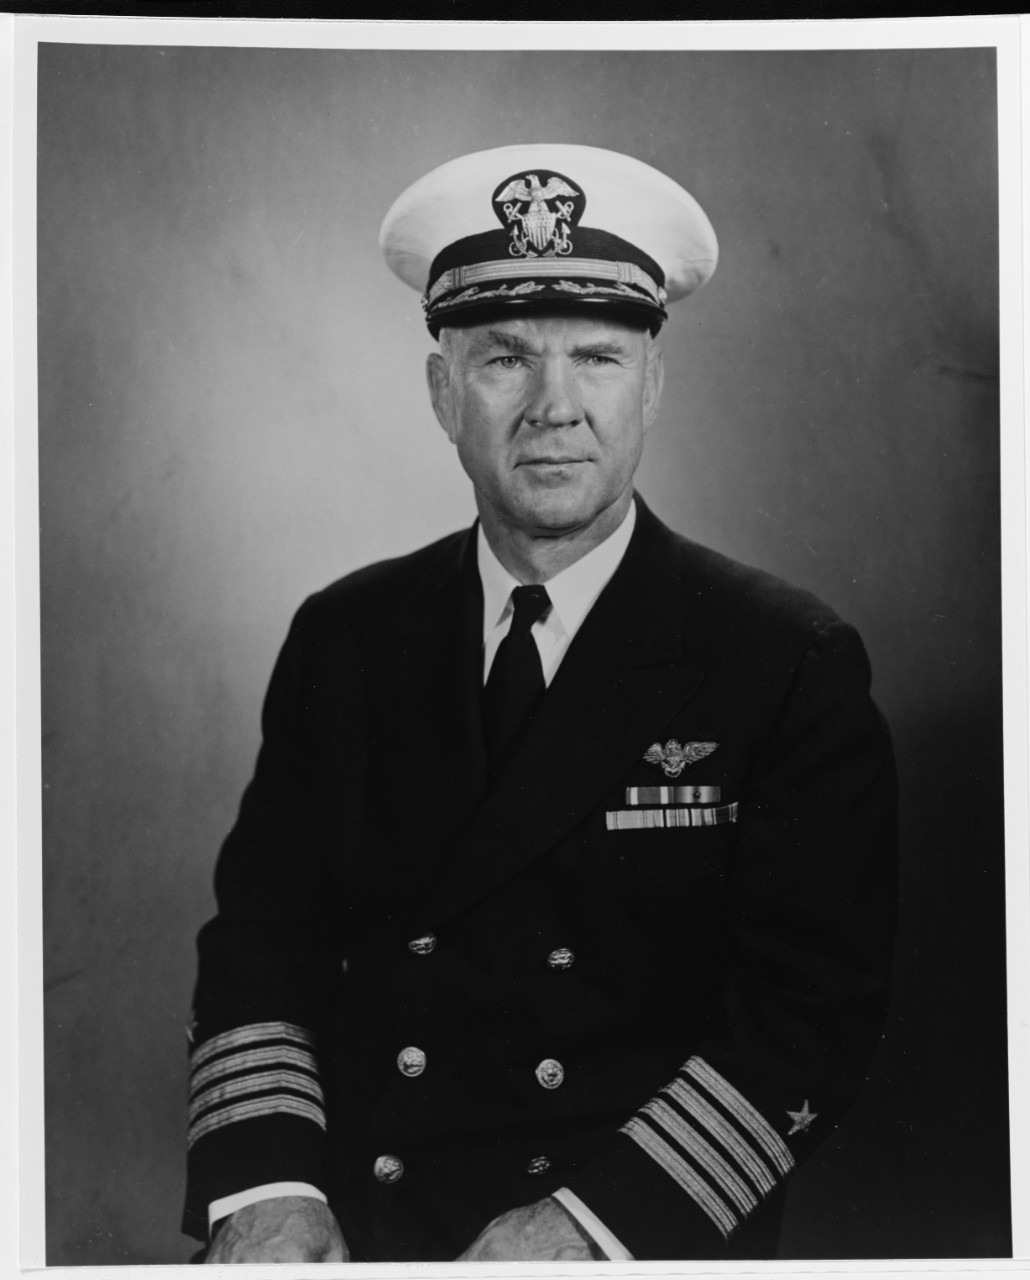 Captain John E. Pixton, USN